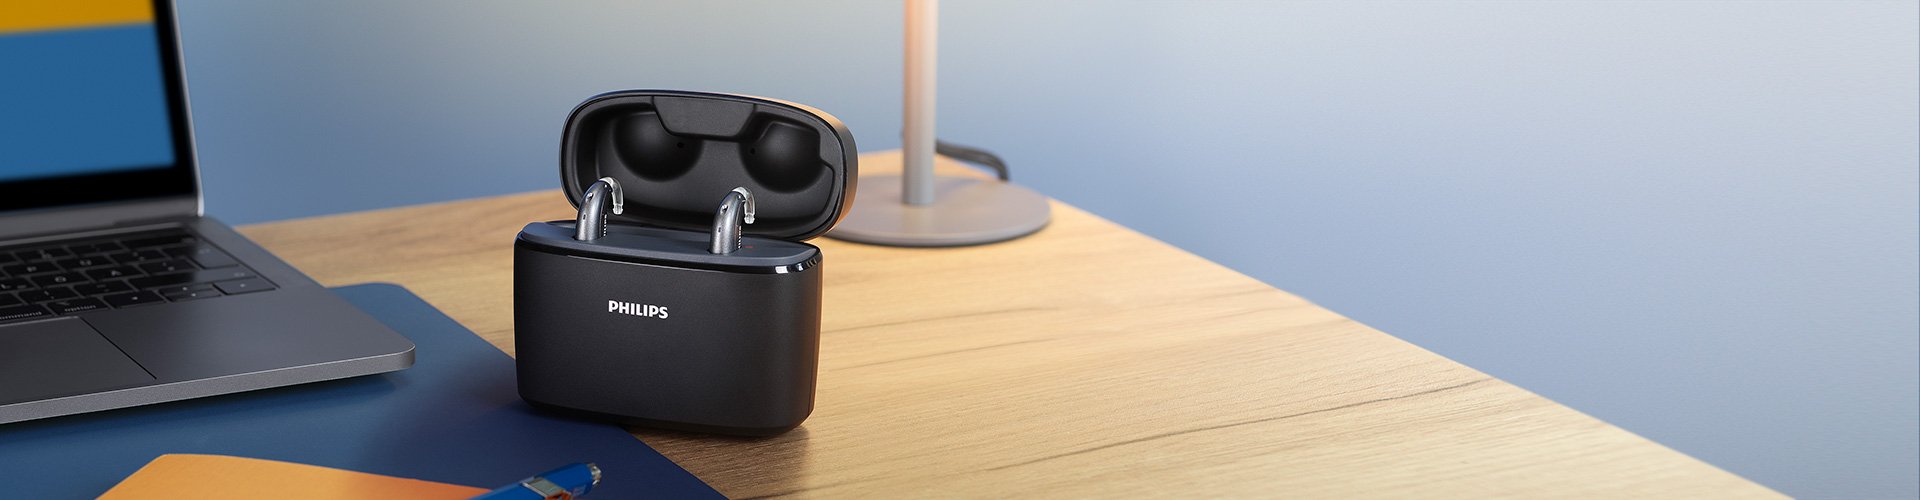 Aides auditives Philips HearLink dans le style mini contour d'oreille (miniBTE T R) sur un bureau en bois à côté d'une lampe, d'un ordinateur portable, d'un cahier et d'un stylo